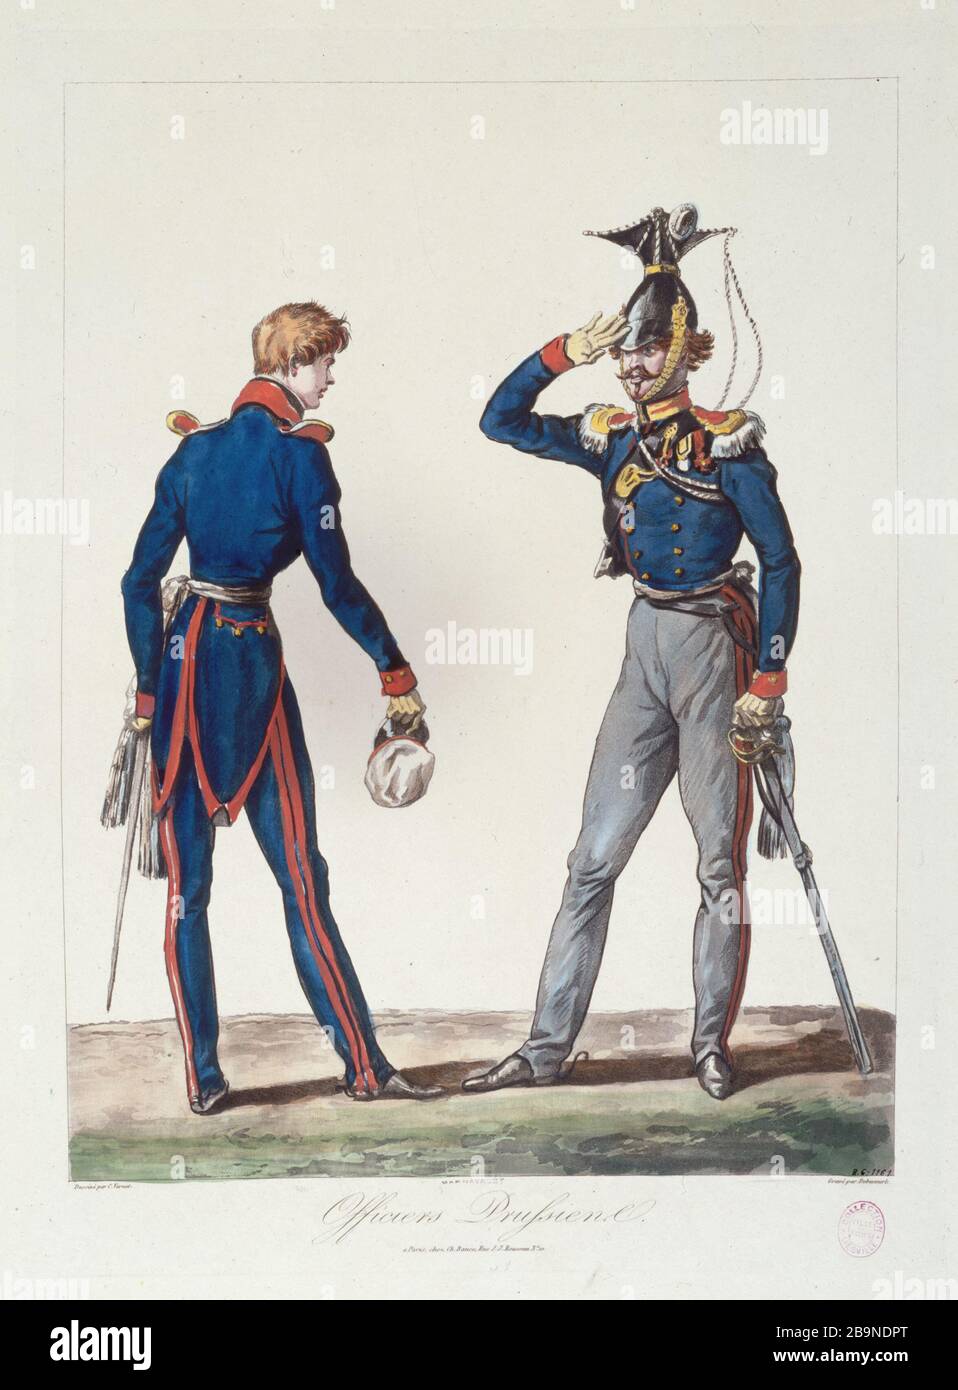 Prussian officers Philibert-Louis Debucourt (1755-1832), d'après Carle Vernet (1758-1836). 'Officiers prussiens'. Gravure (aquatinte coloriée), 1815. Paris, musée Carnavalet. Stock Photo